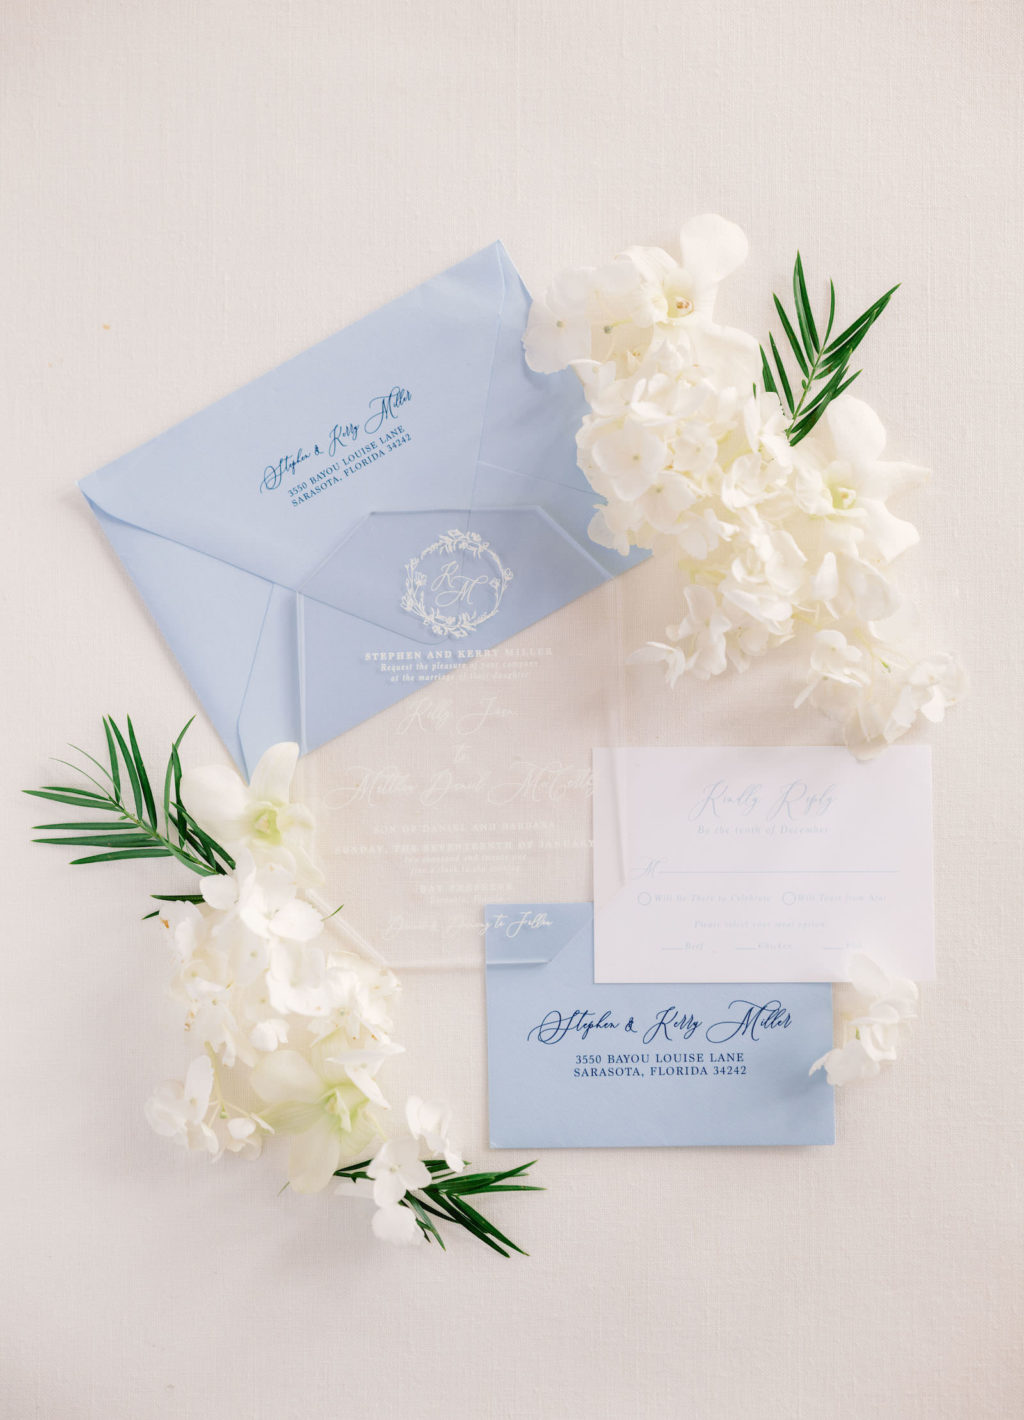 Elegant Modern Acrylic and White Font Wedding Invitation and Dusty Blue Envelopes